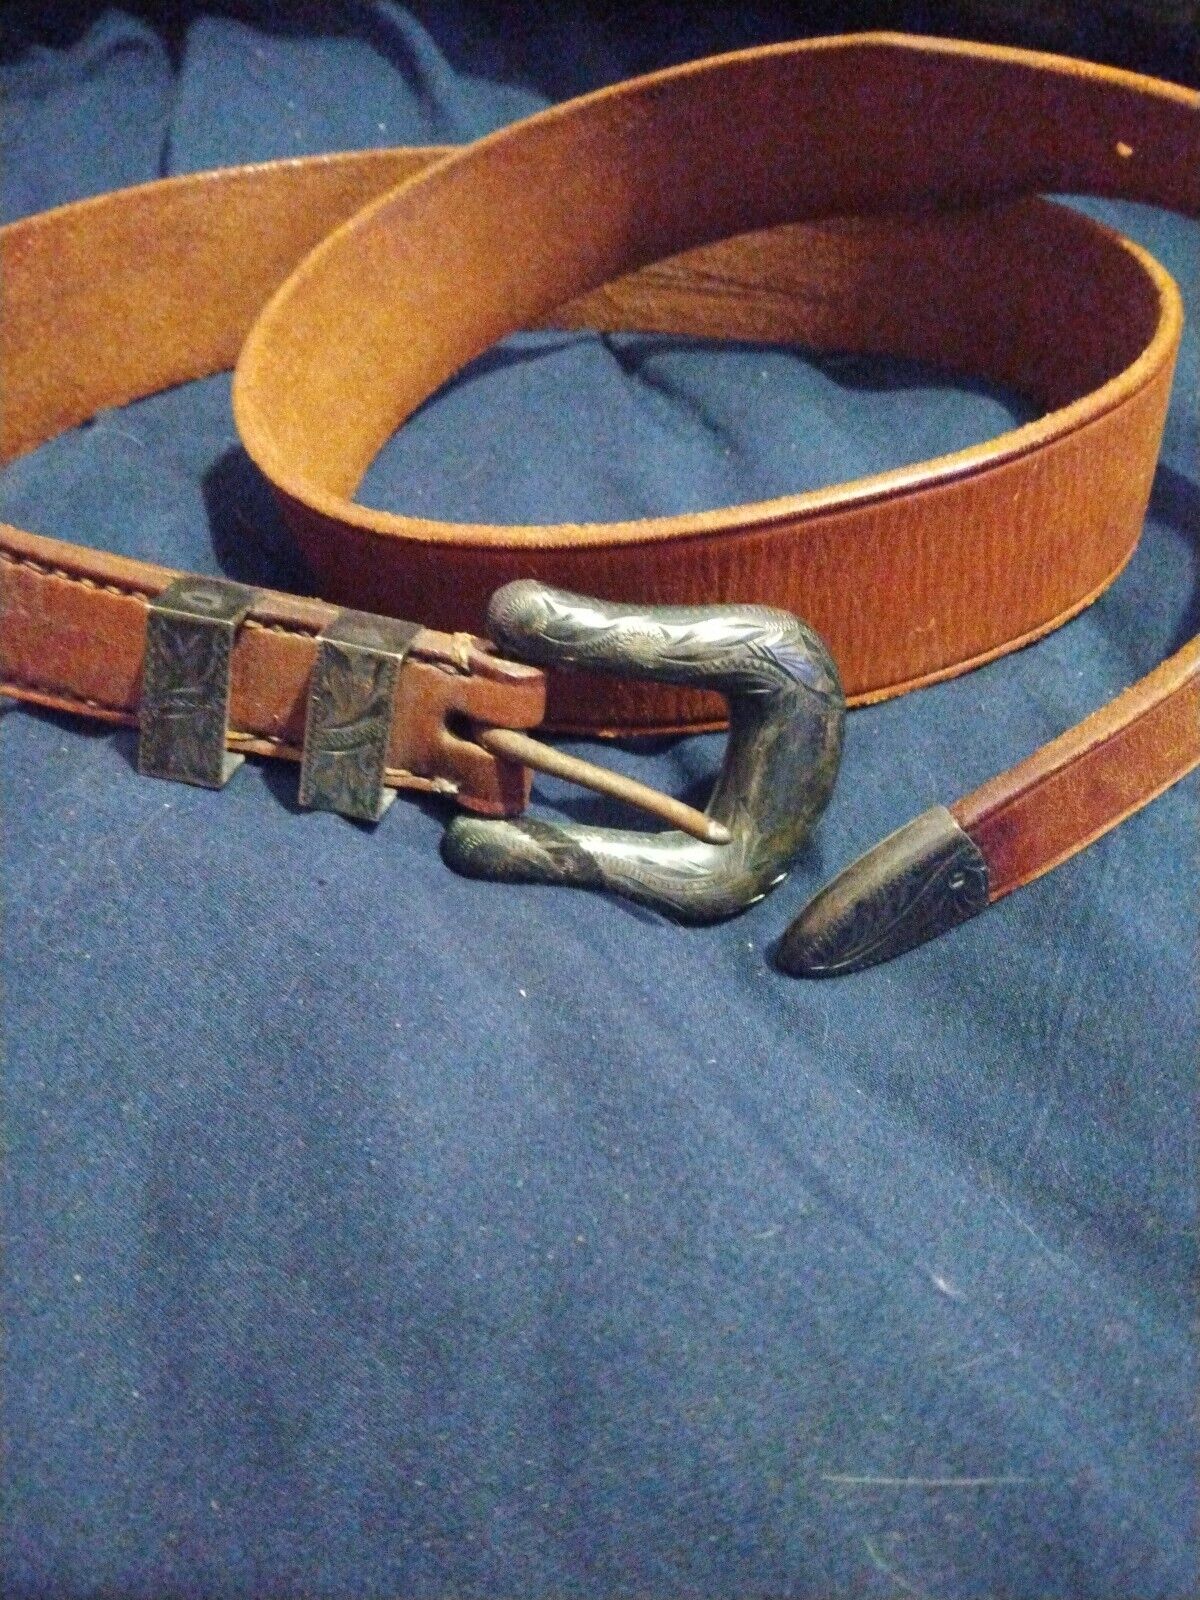 Vintage DON RICARDO STERLING BELT BUCKLE SET Brown Leather Belt Good Condition 